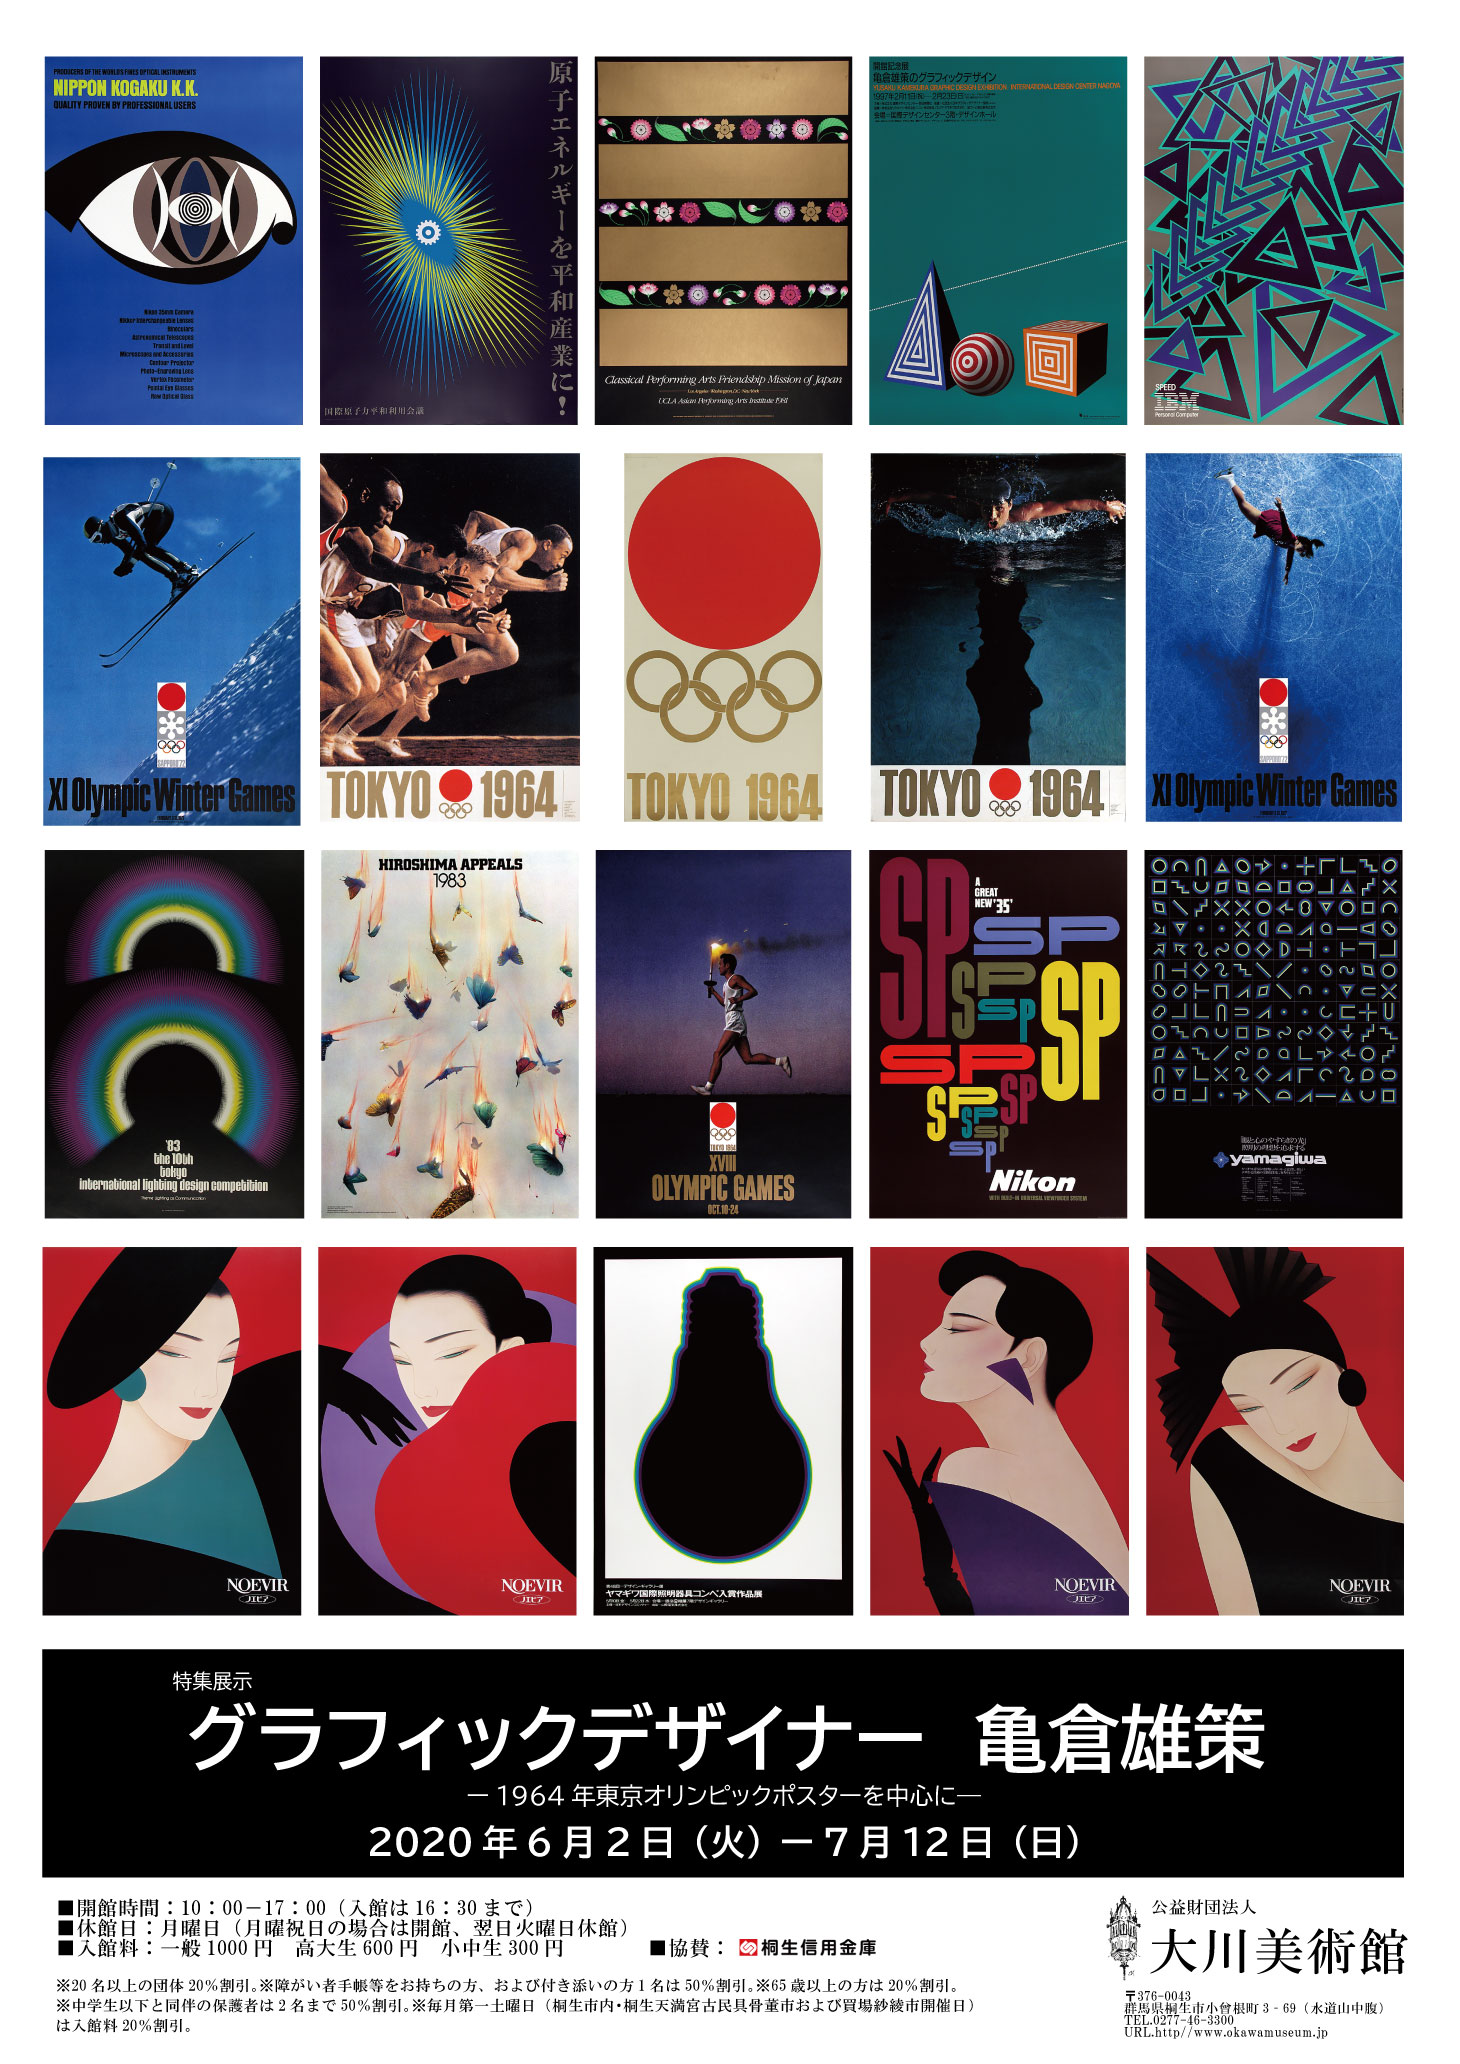 
特集展示
「グラフィックデザイナー 
　　　　　　　　　亀倉雄策」
ポスターを作製いたしました
